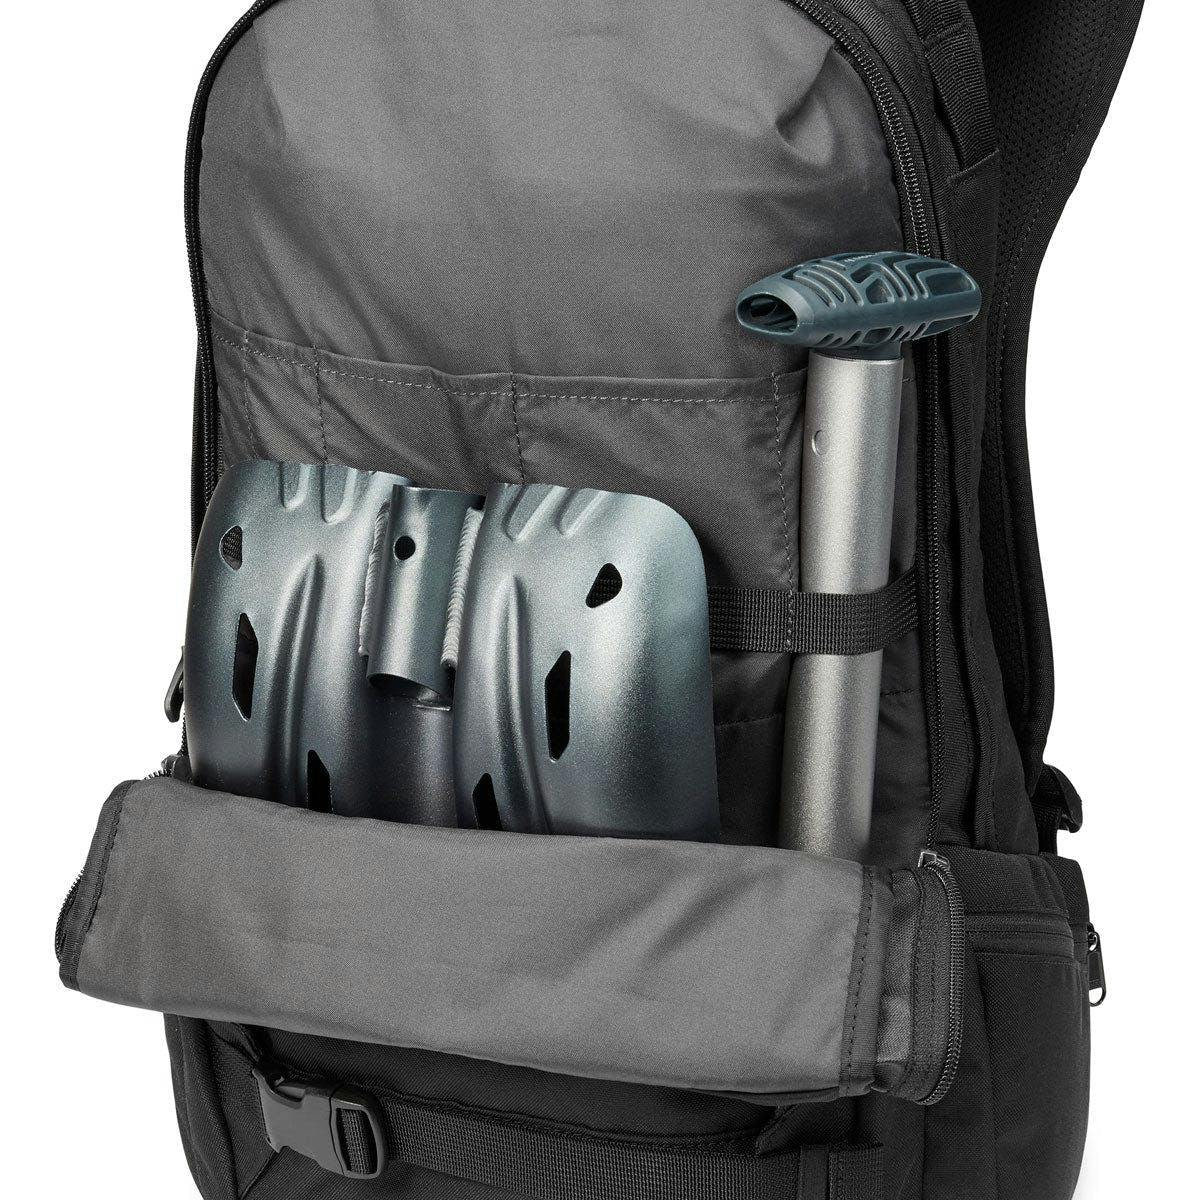 Dakine Mission 25L Backpack